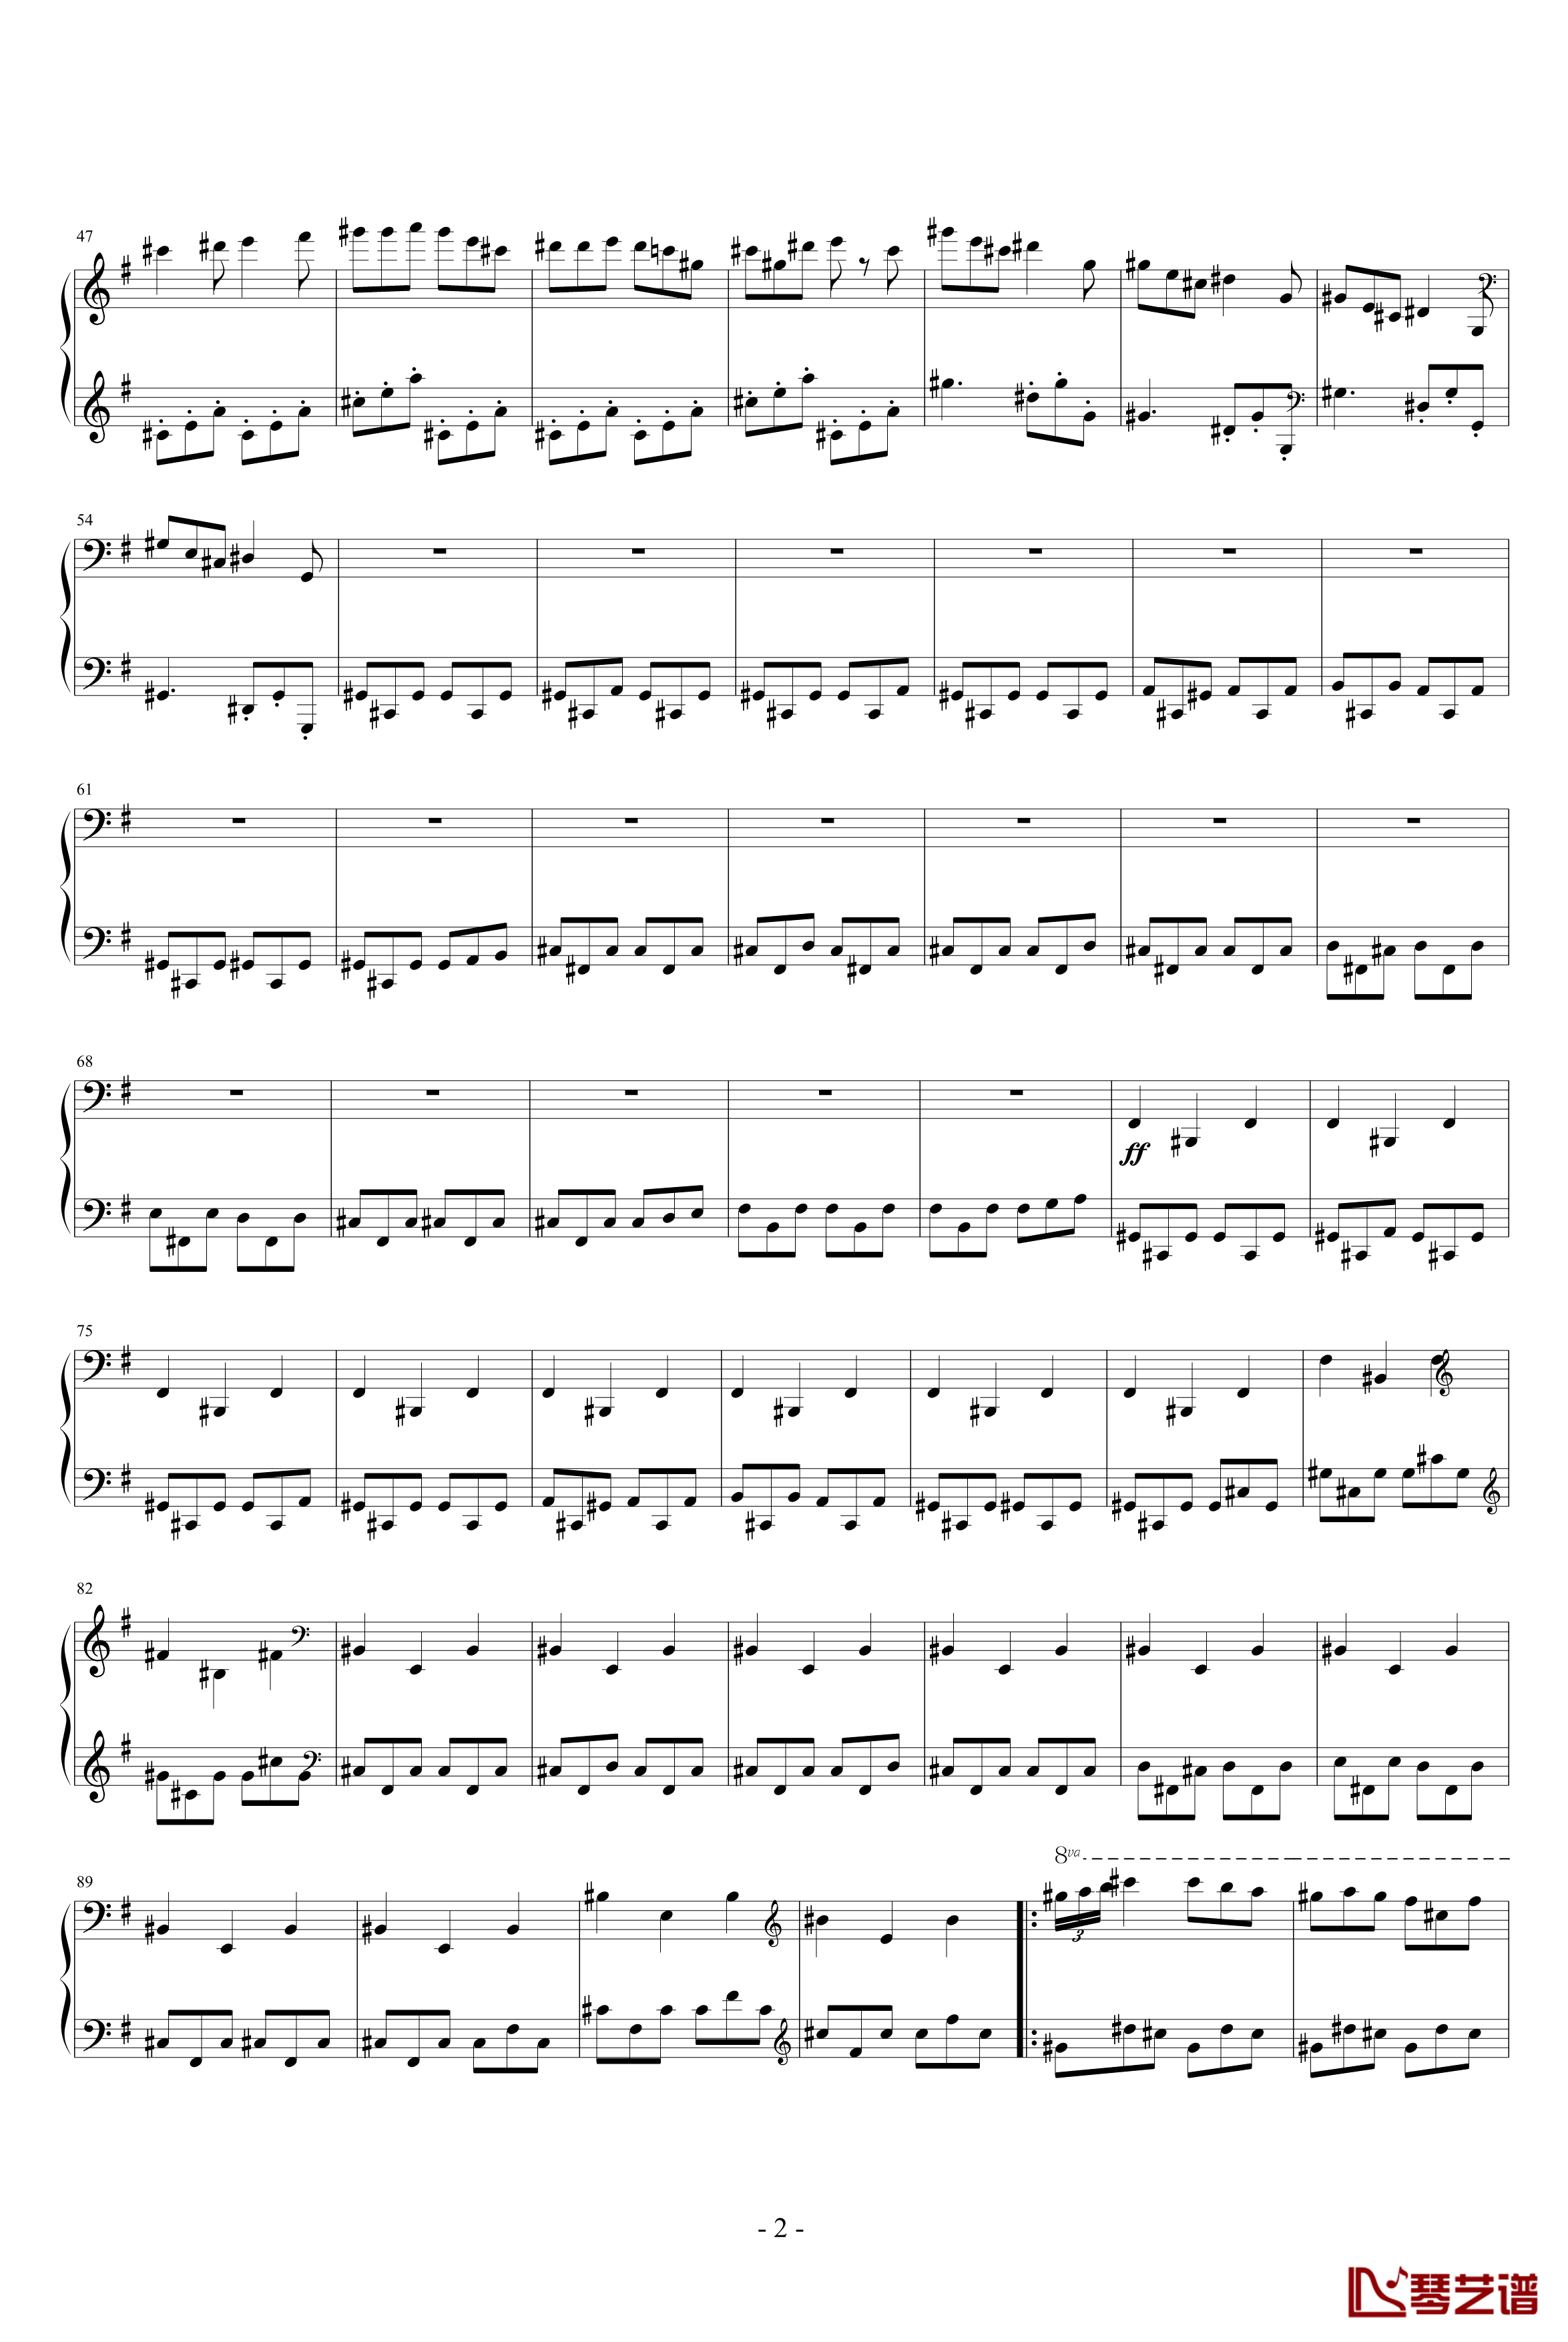 第三钢琴奏鸣曲钢琴谱-谐谑曲-齐少凡2